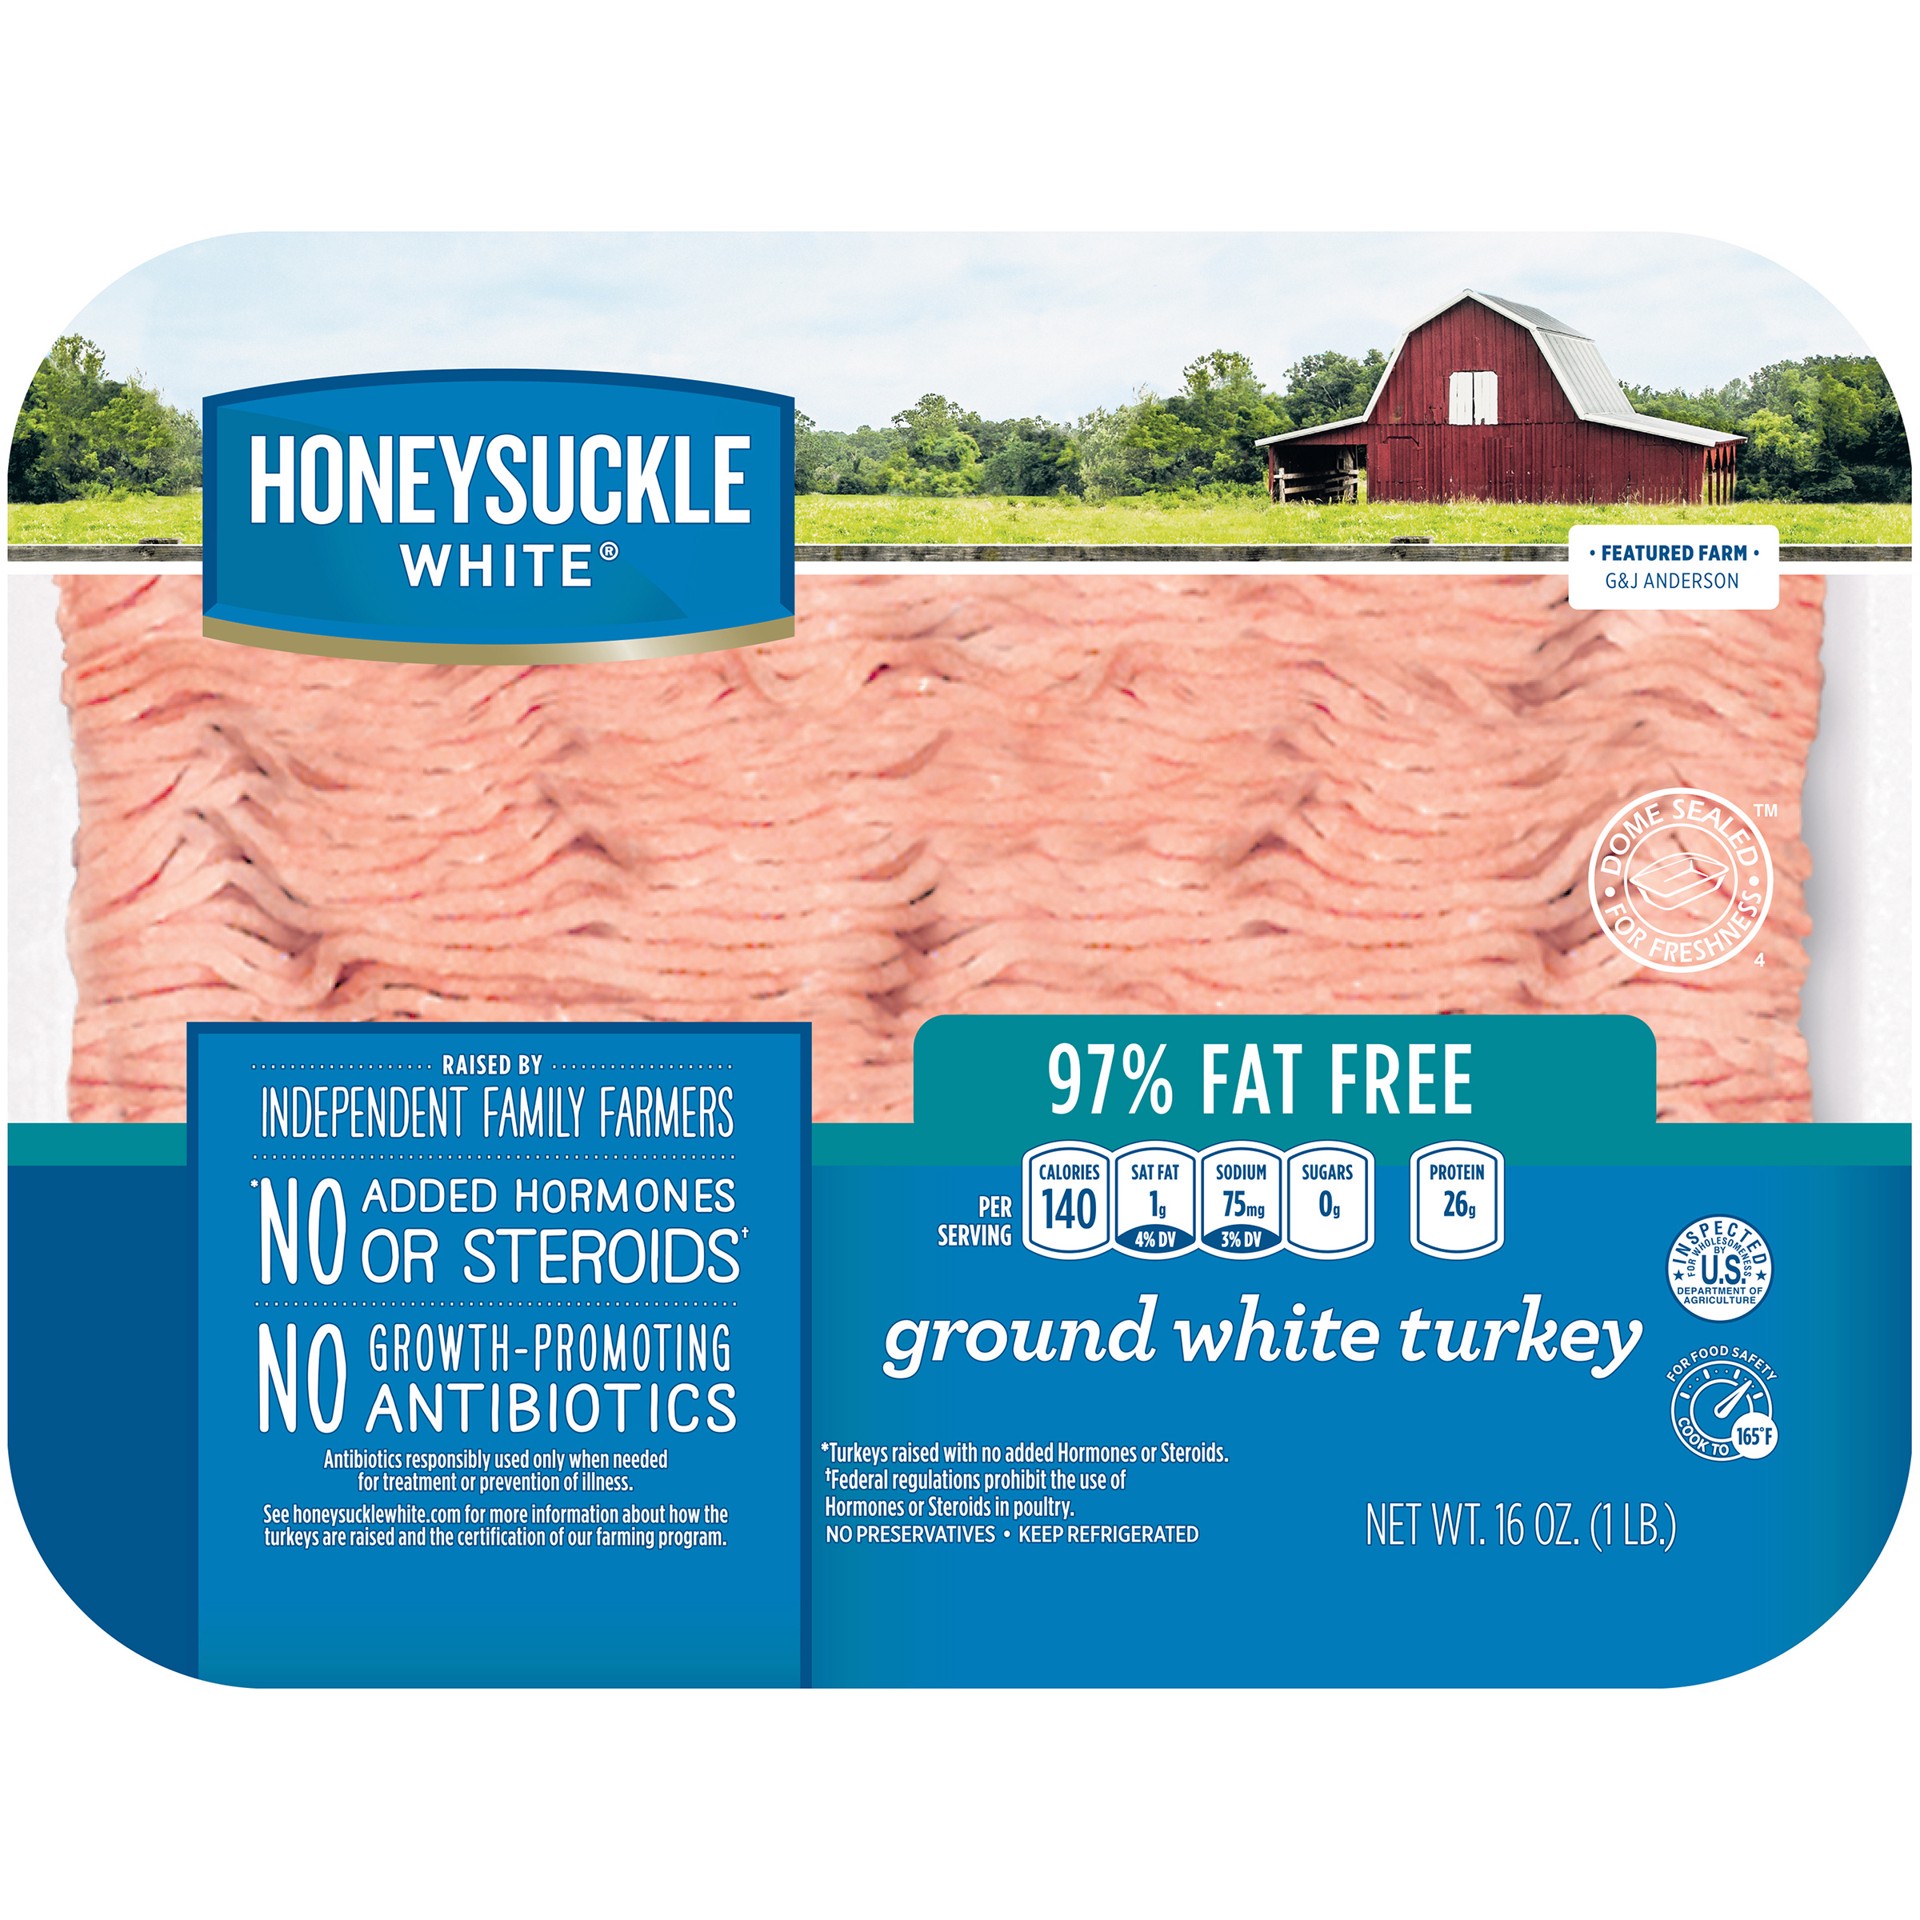 slide 1 of 10, Honeysuckle White 97% Fat Free Ground White Turkey Tray, 1 lb., 16 oz